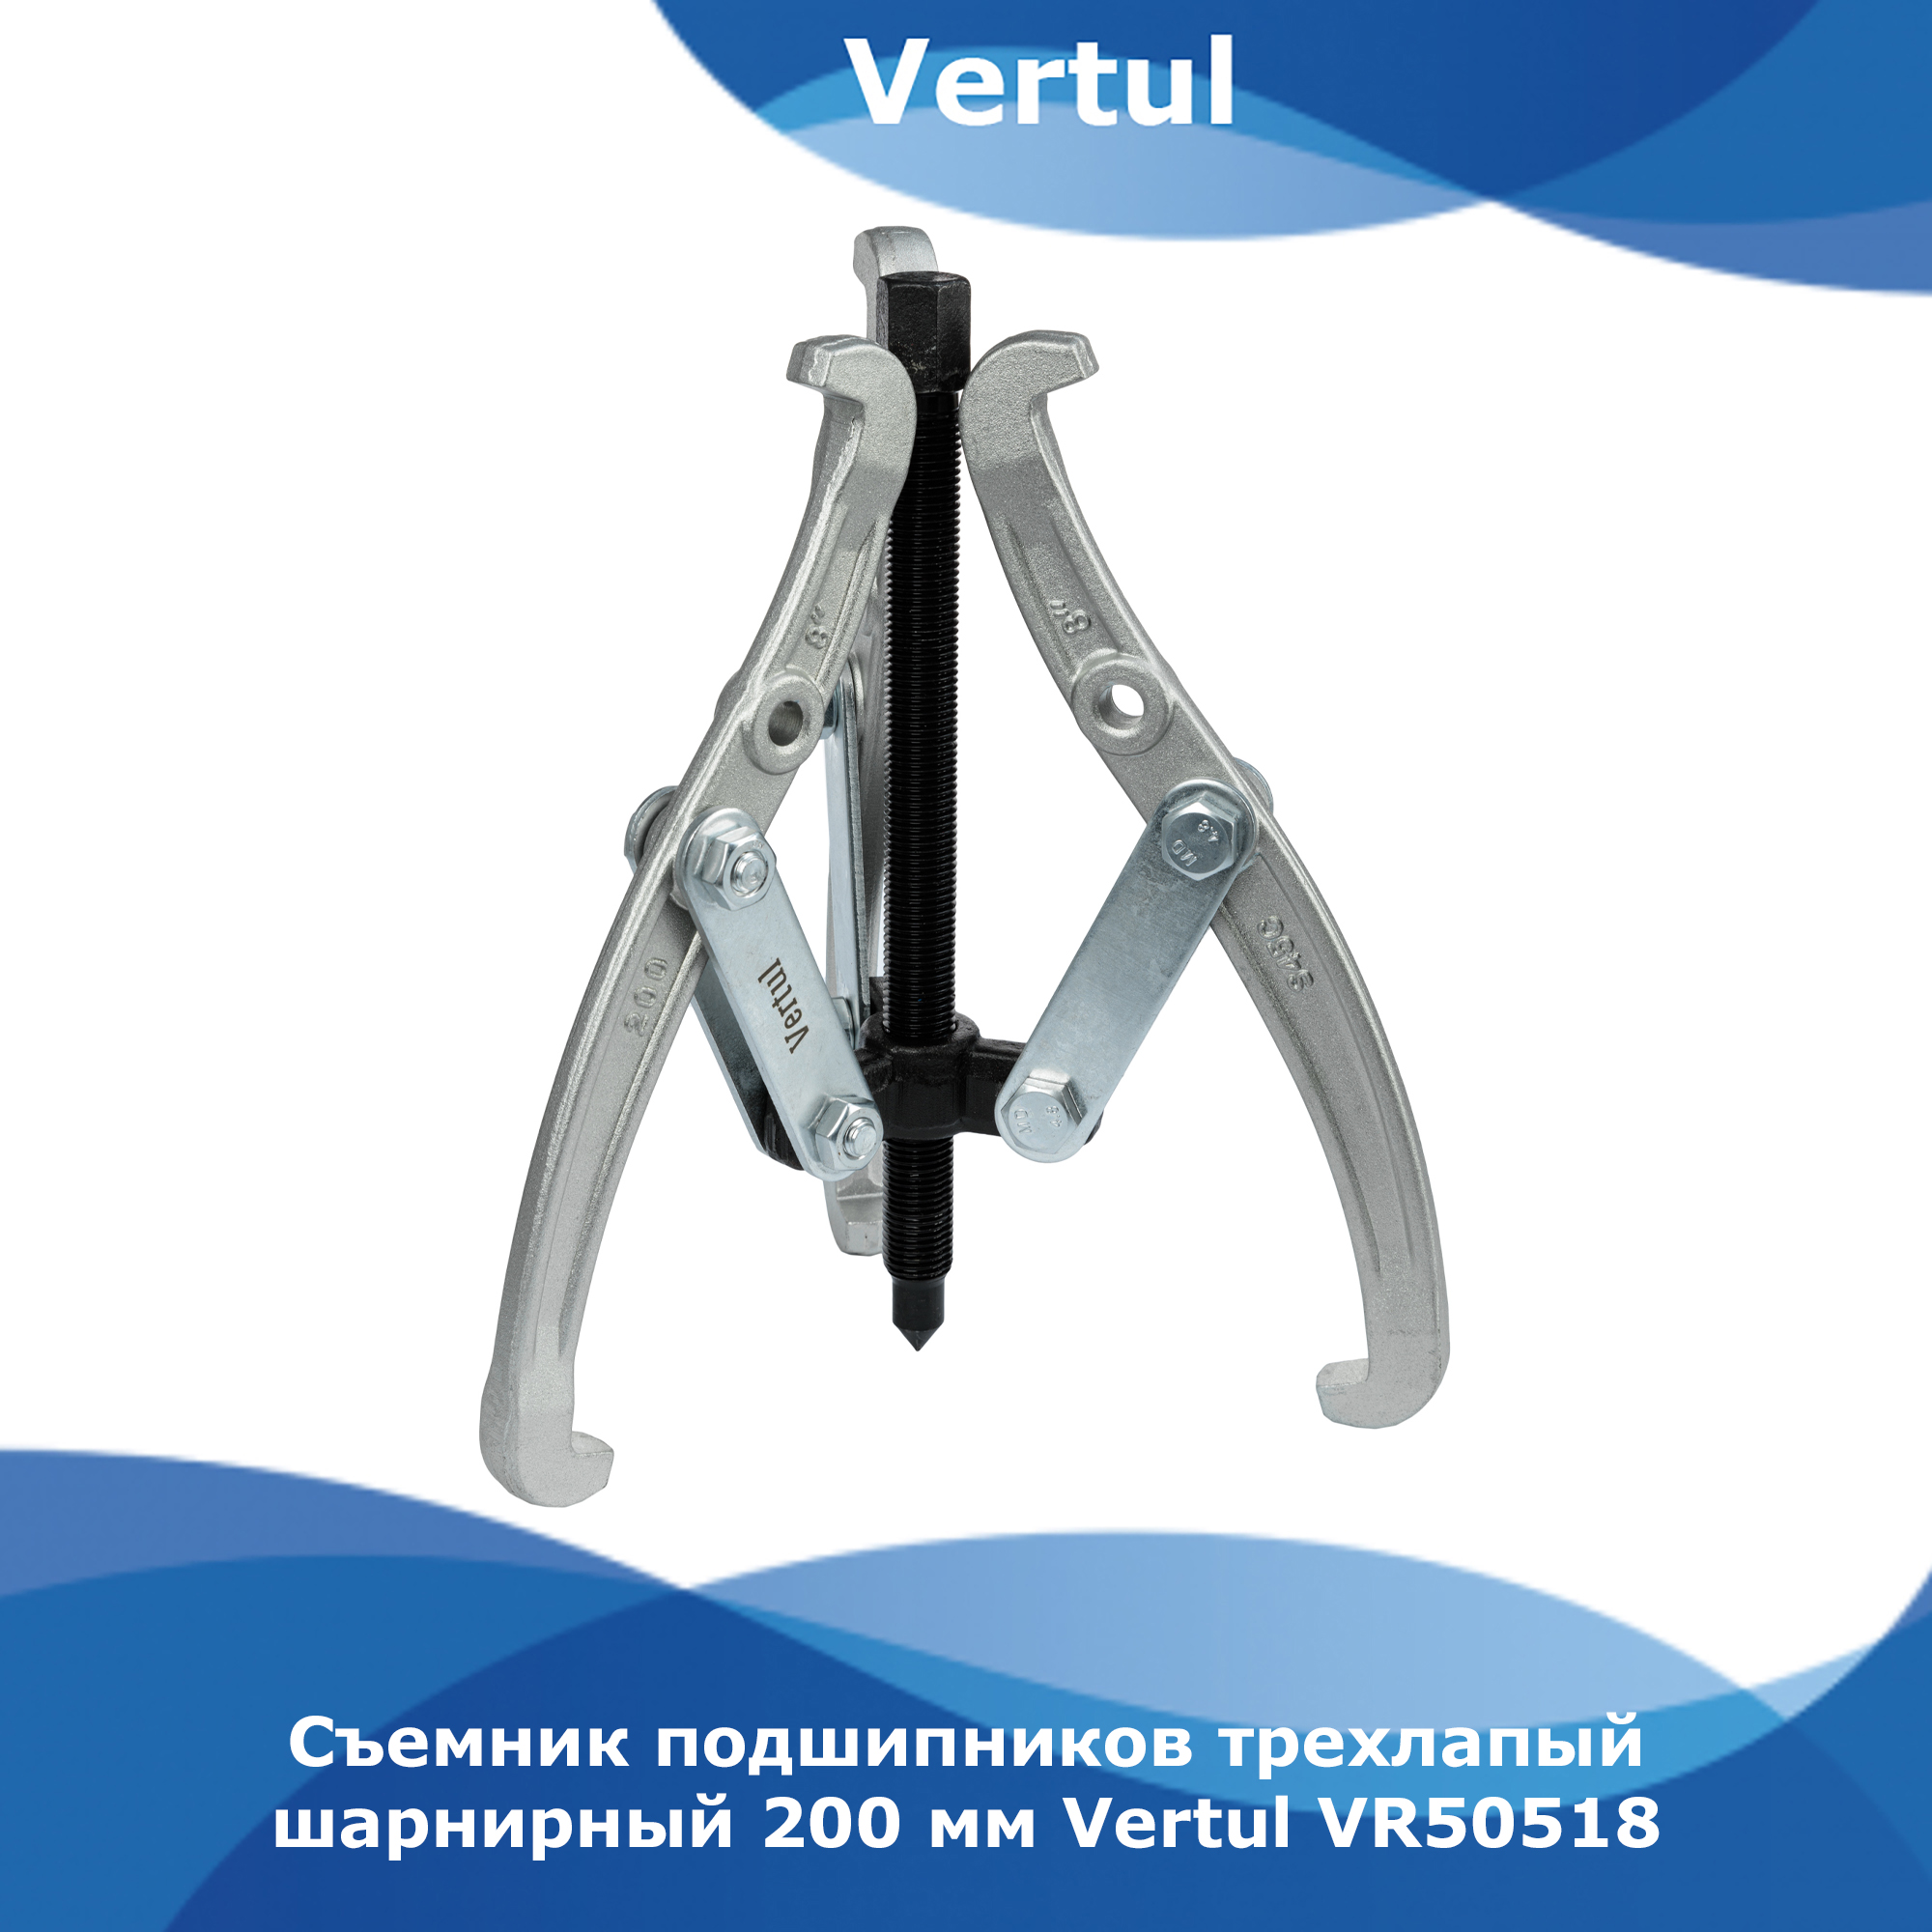 Съемник подшипников Vertul трехлапый шарнирный 200мм VR50518